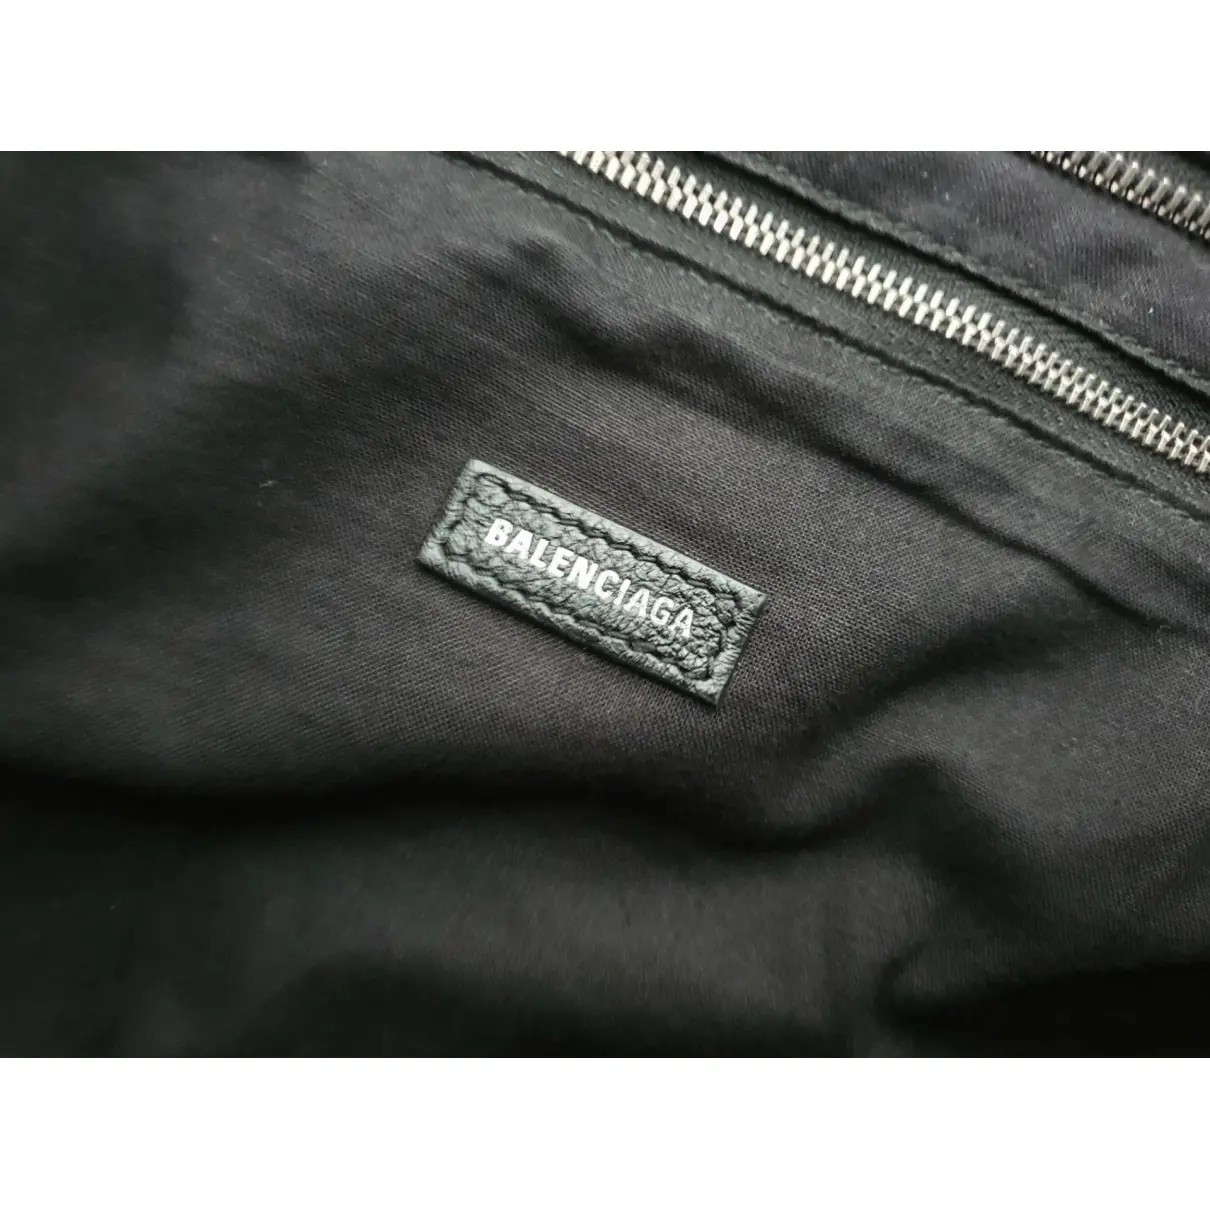 Leather weekend bag Balenciaga